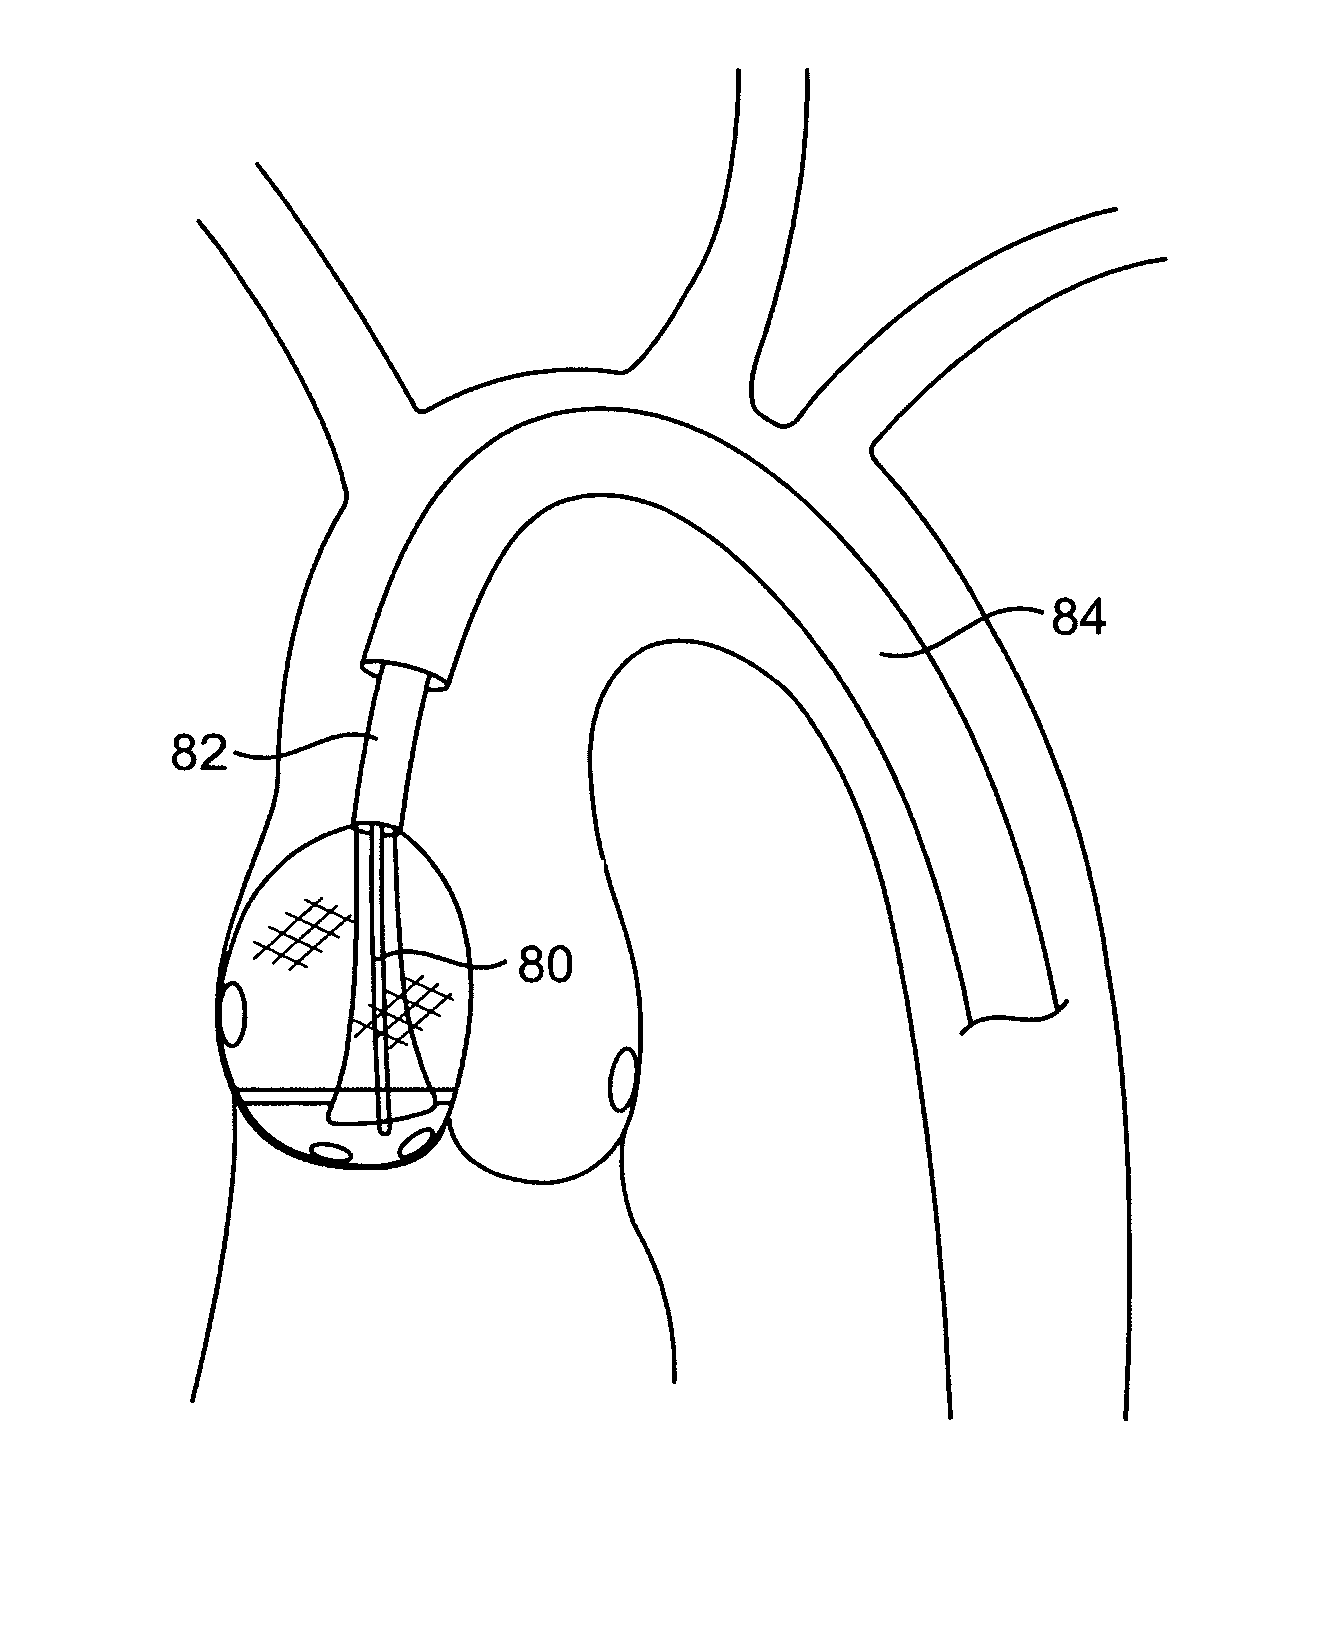 Aortic valve repair